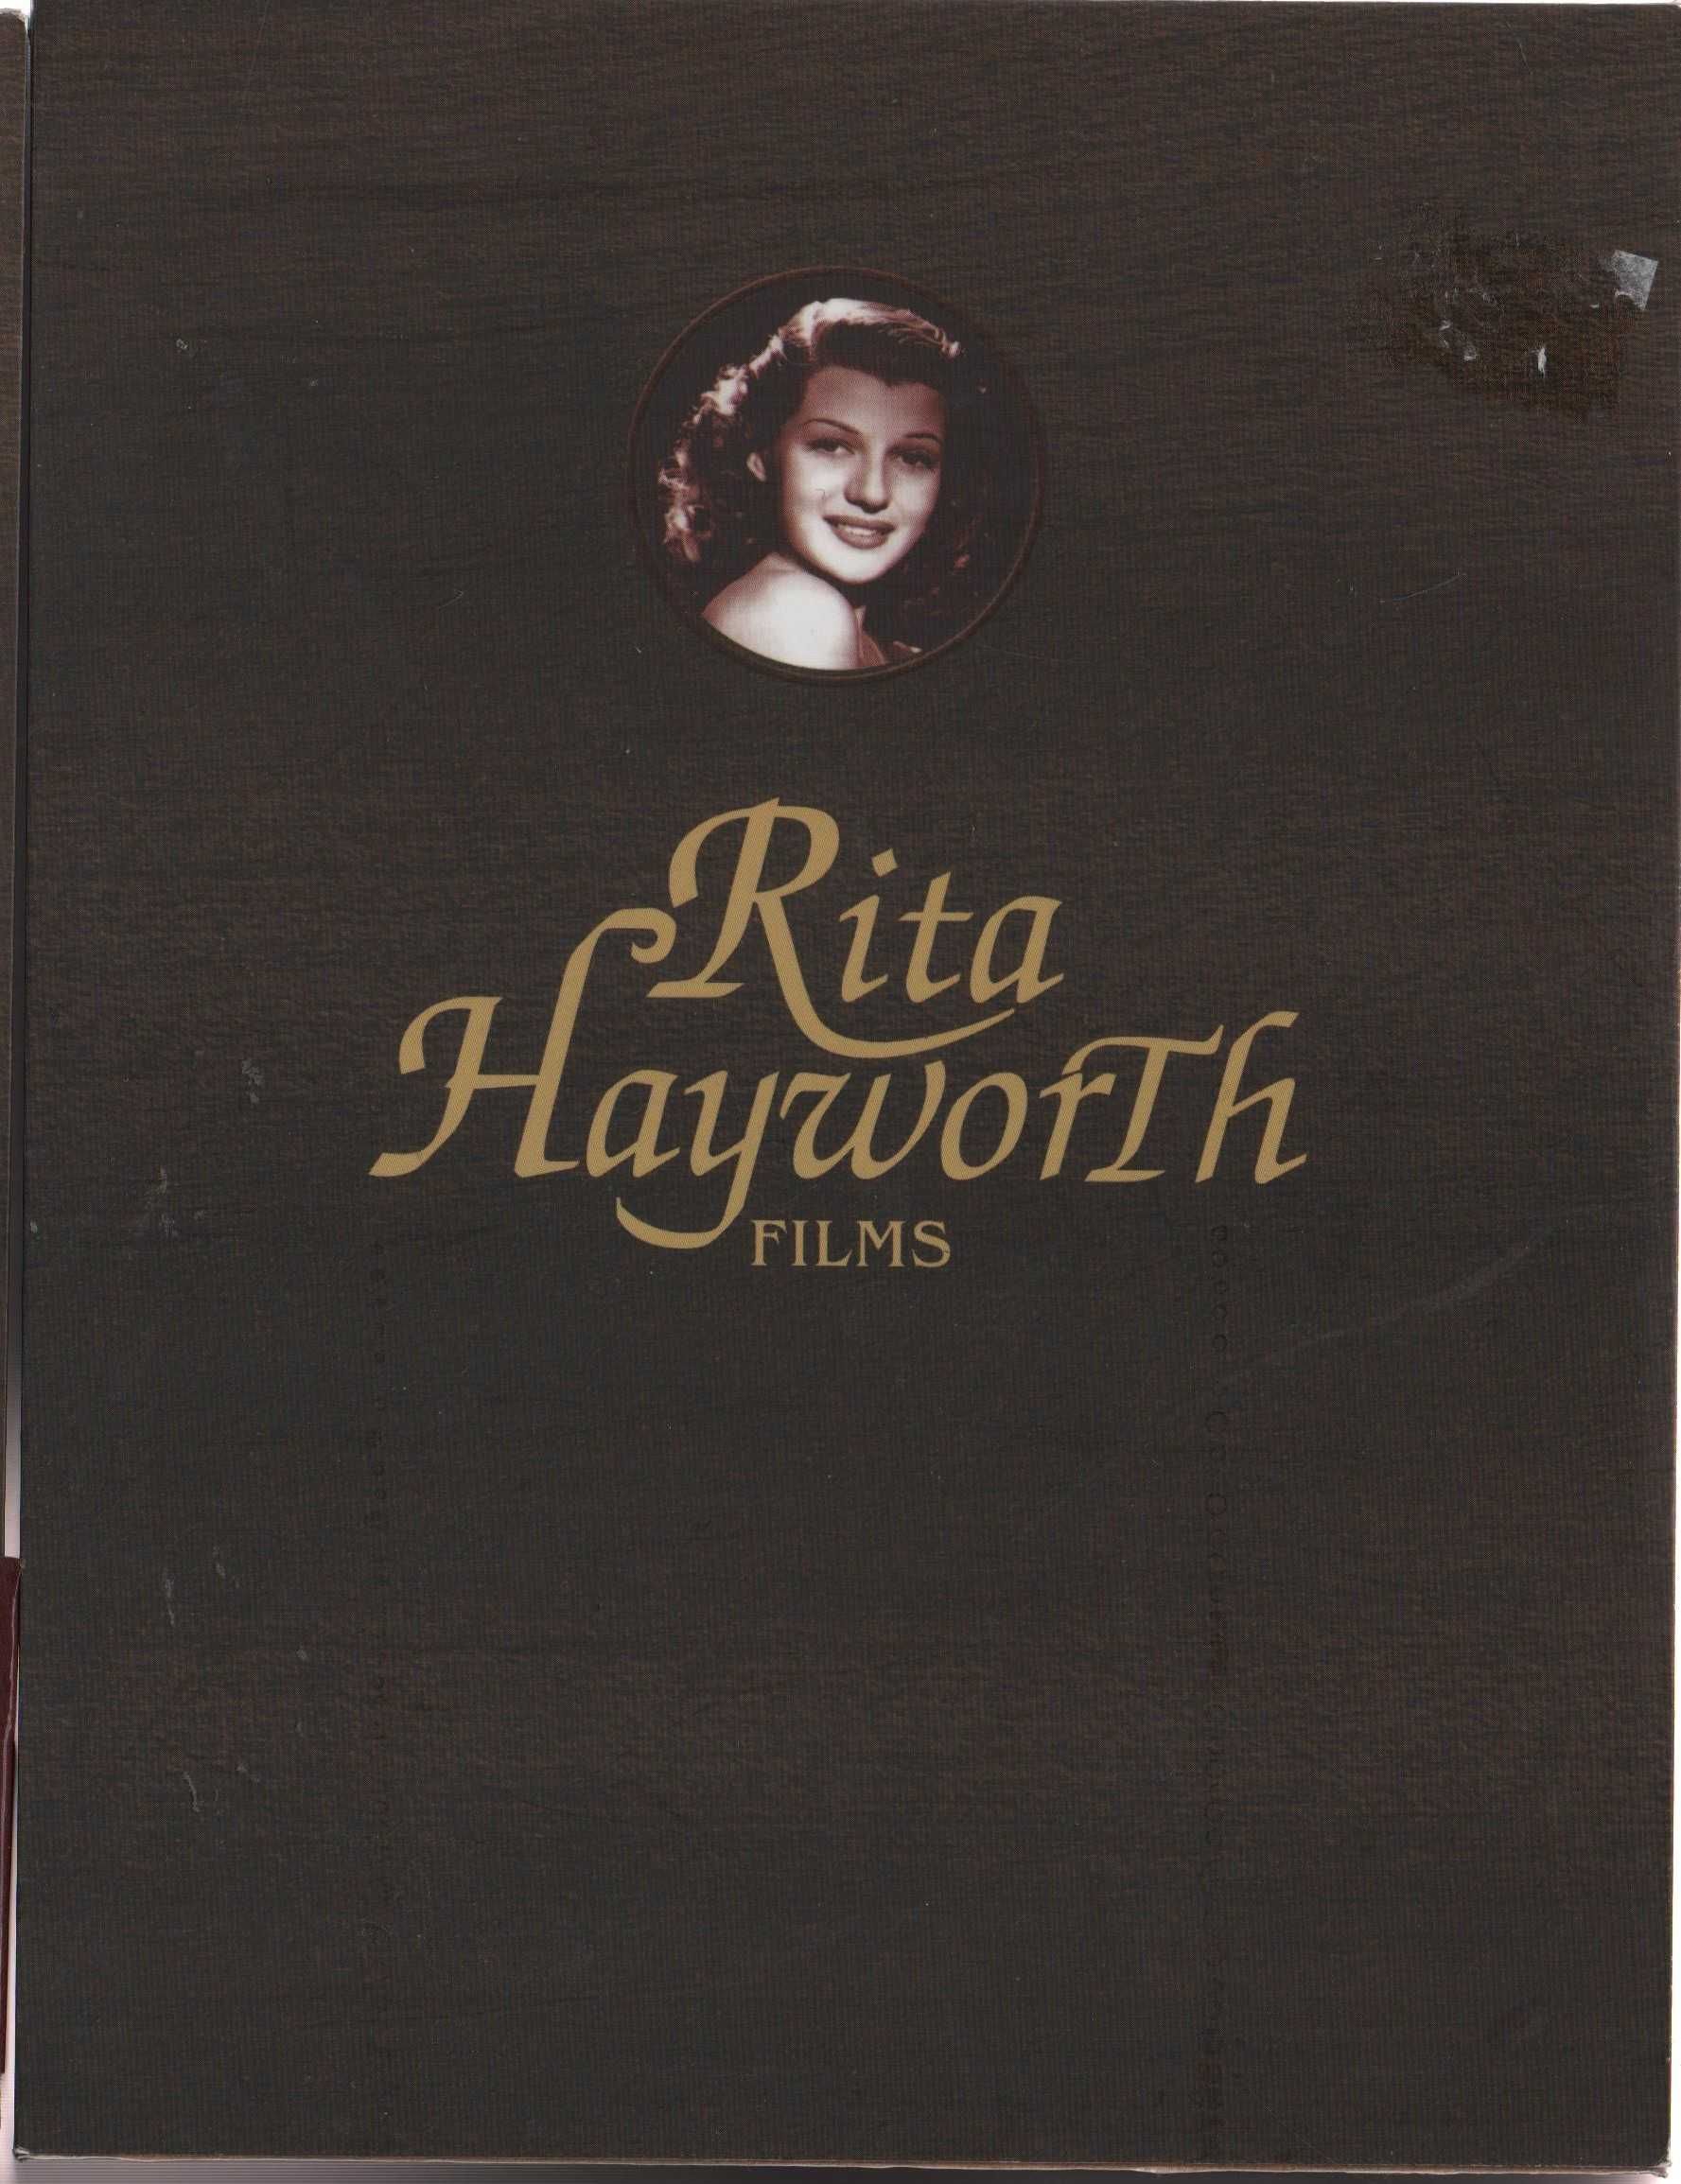 Dvd Caixa com 5 filmes de Rita Hayworth - com livro de 80 páginas